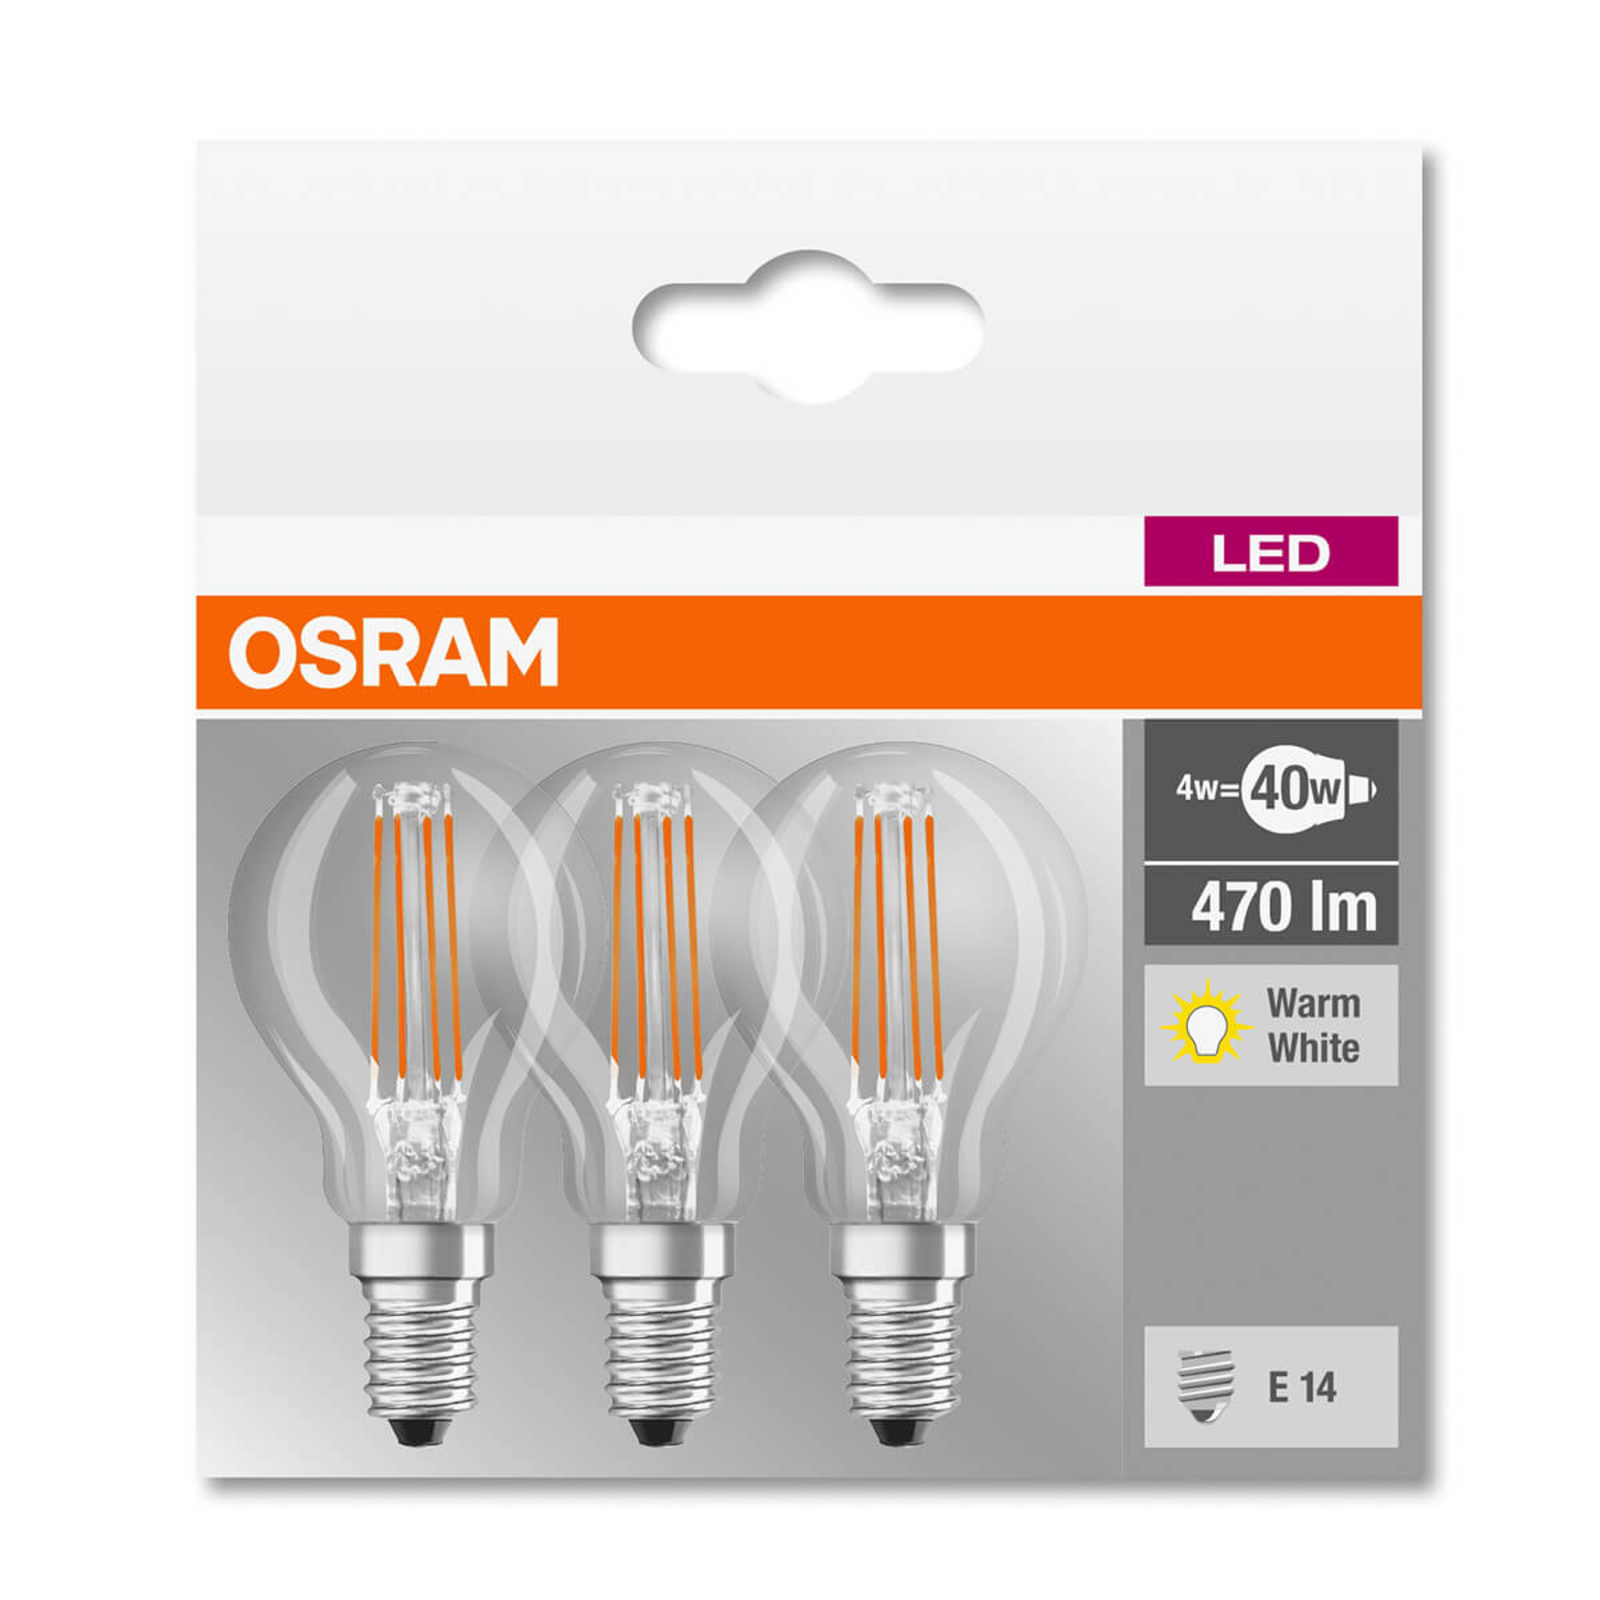 Osram LED Lampe STAR SPECIAL T26 2.3W warmweiss E14 4058075136021 wie 20W